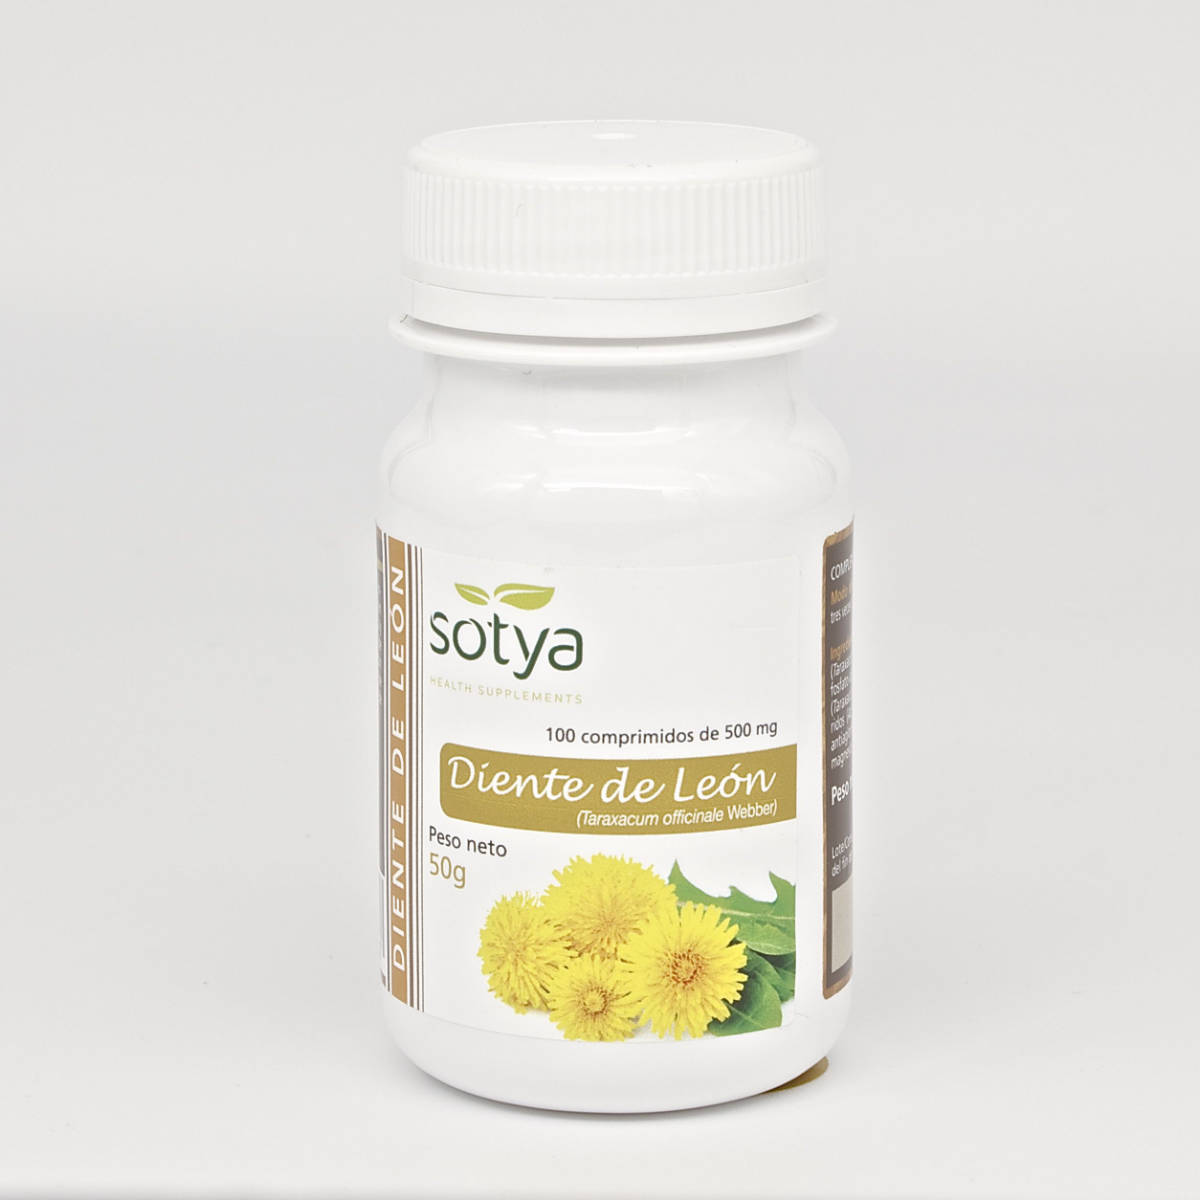 Sotya-Diente-De-Leon-100-Comprimidos-Biopharmacia,-Parafarmacia-online